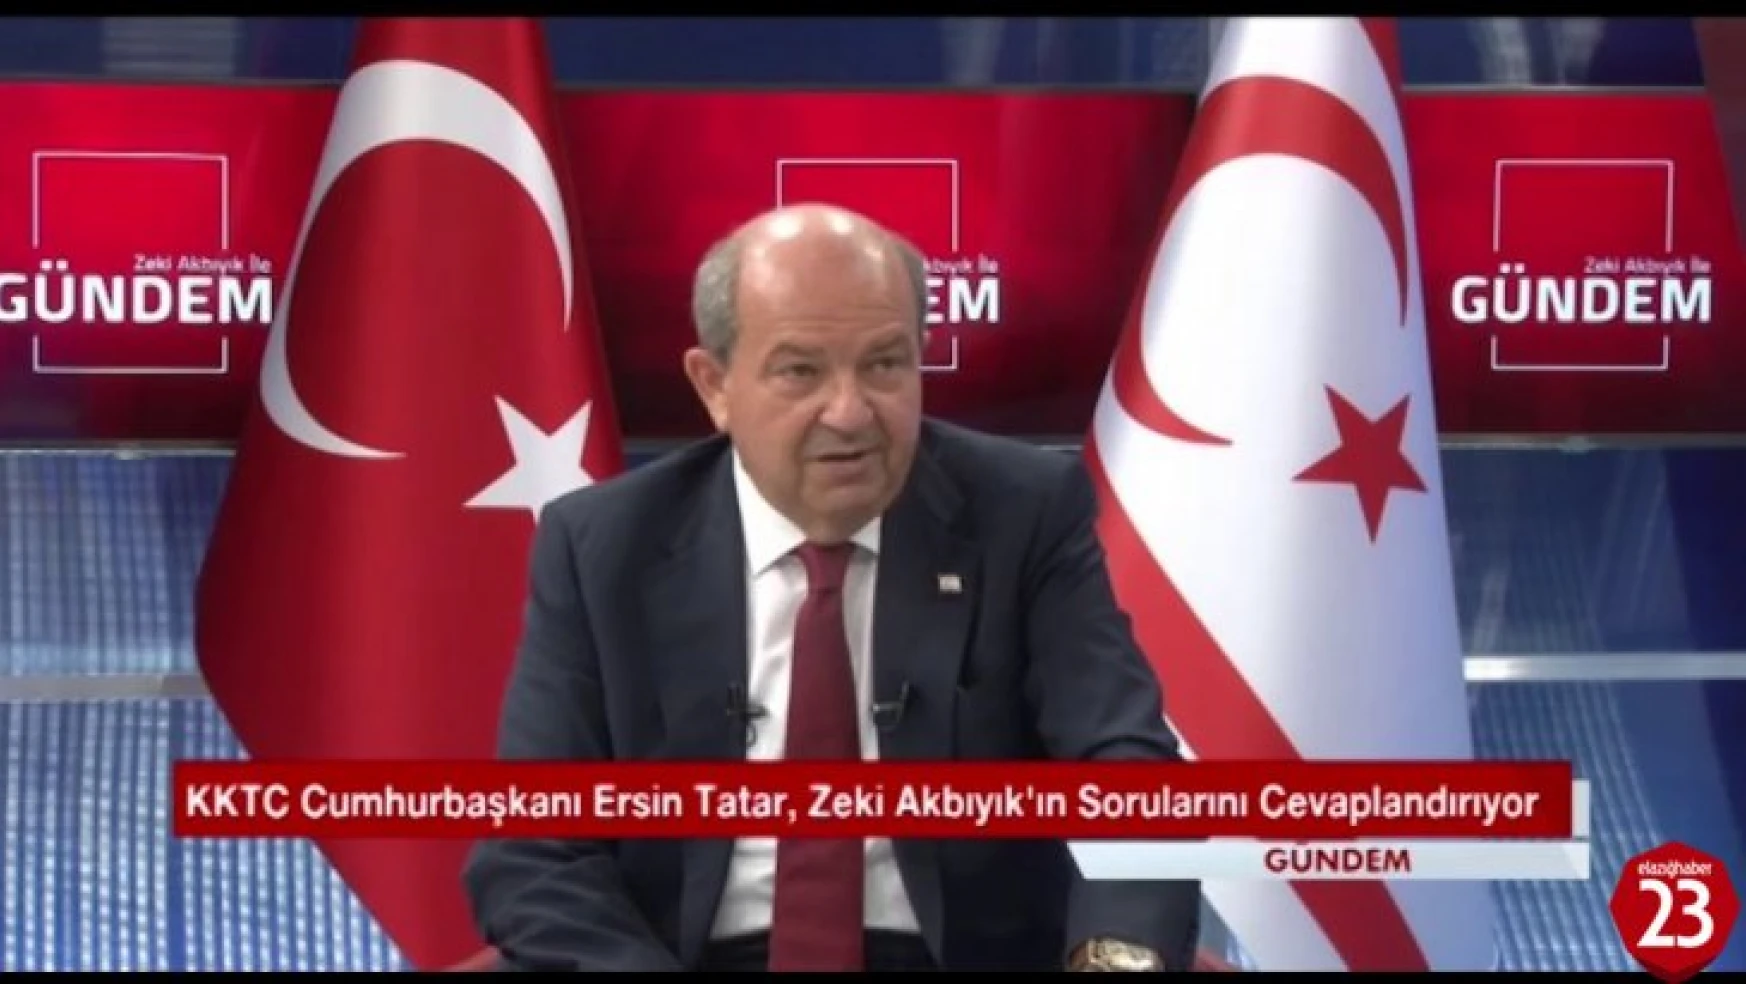 KKTC Cumhurbaşkanı Ersin Tatar, Cumhurbaşkanı Recep Tayyip Erdoğan Kararlılığını Bir Kez Daha Ortaya Koymuştur